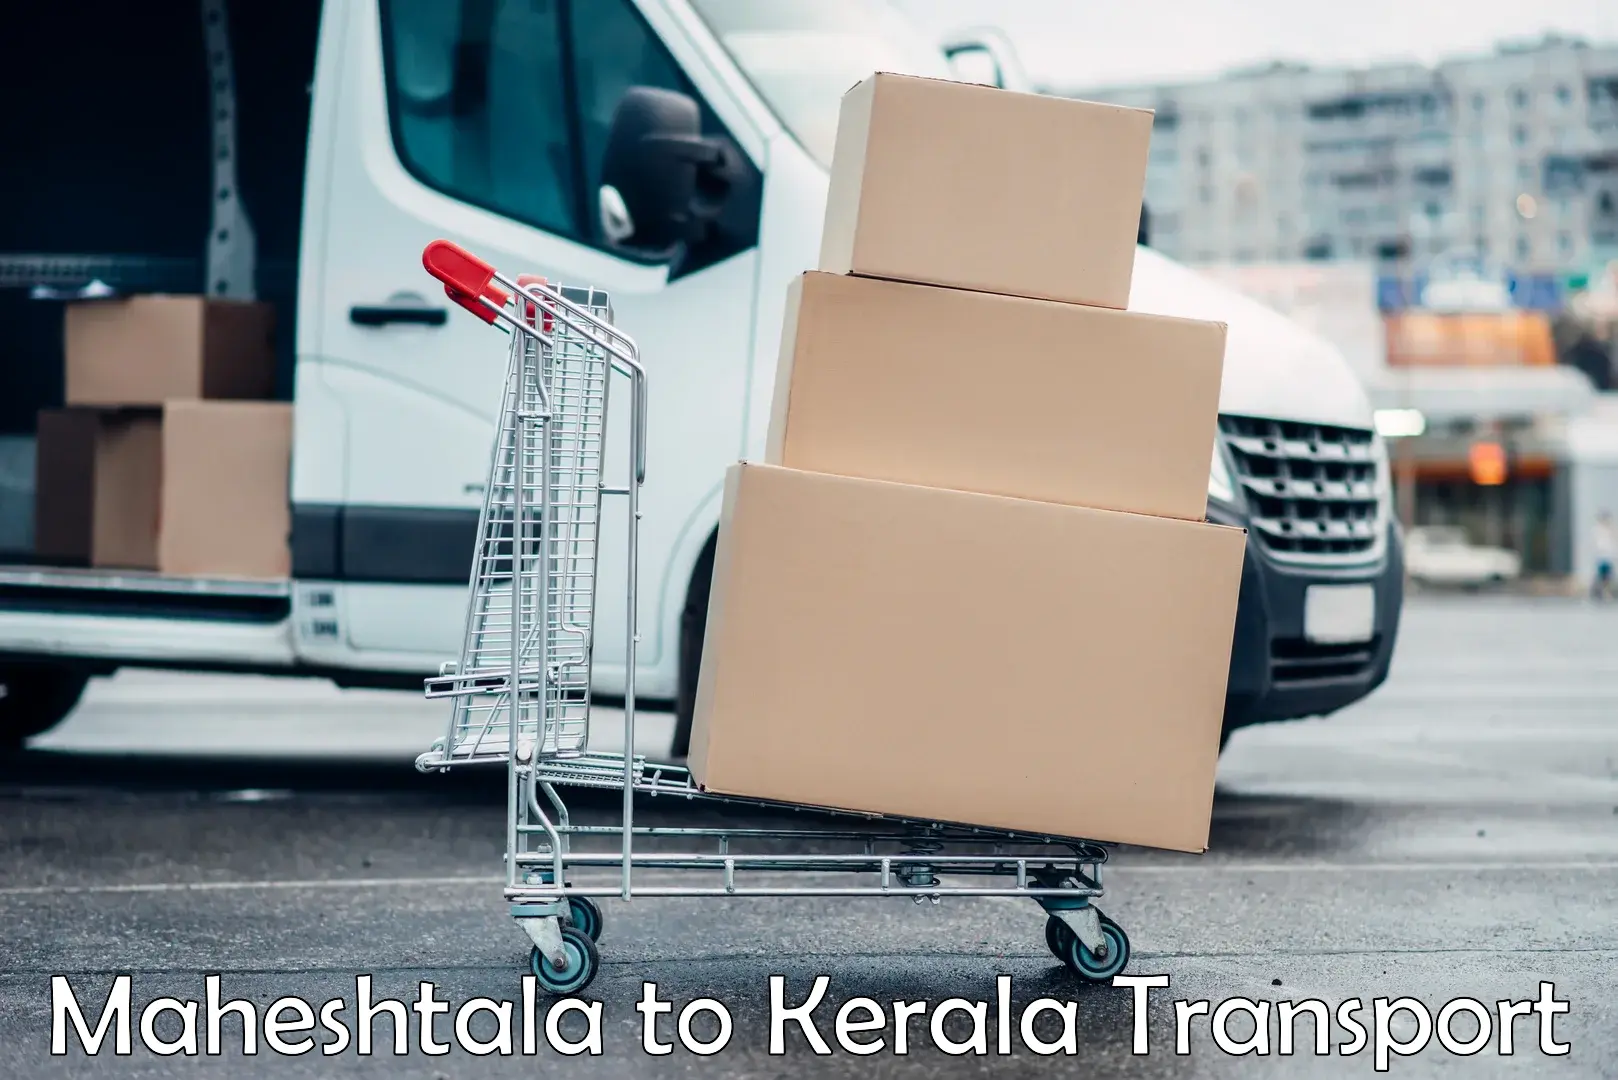 Commercial transport service Maheshtala to Pallikkara